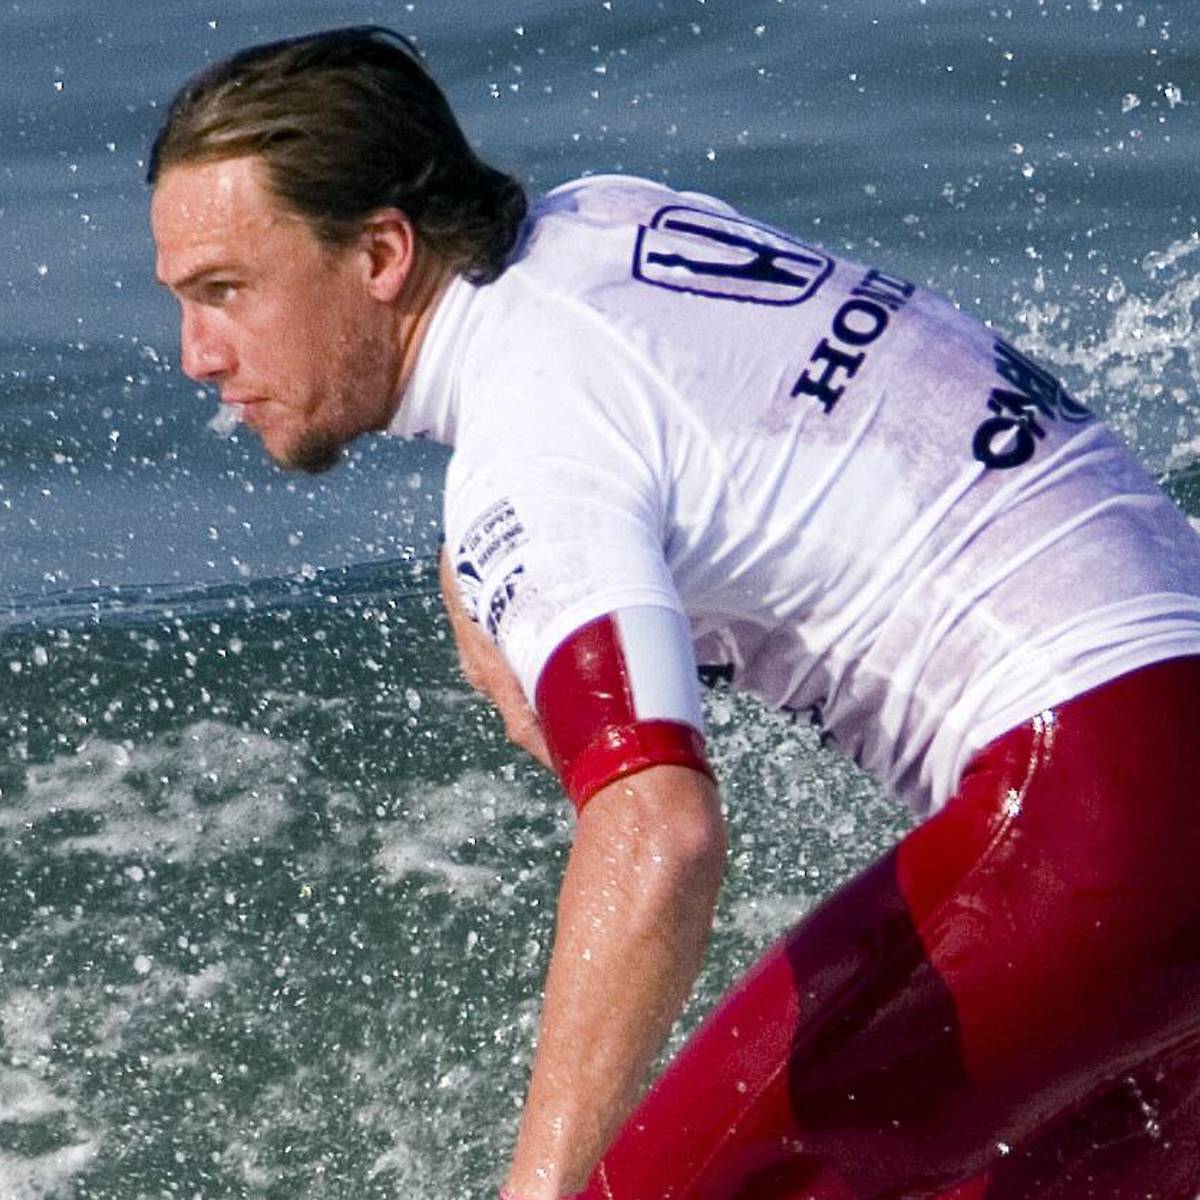 Die Surf-Welt trauert um Chris Davidson, der als Teenager einst die Ikone Kelly Slater ärgerte. Davidson kam infolge einer Kneipenschlägerei ums Leben. Auch der mutmaßliche Täter ist im Sport kein Unbekannter.